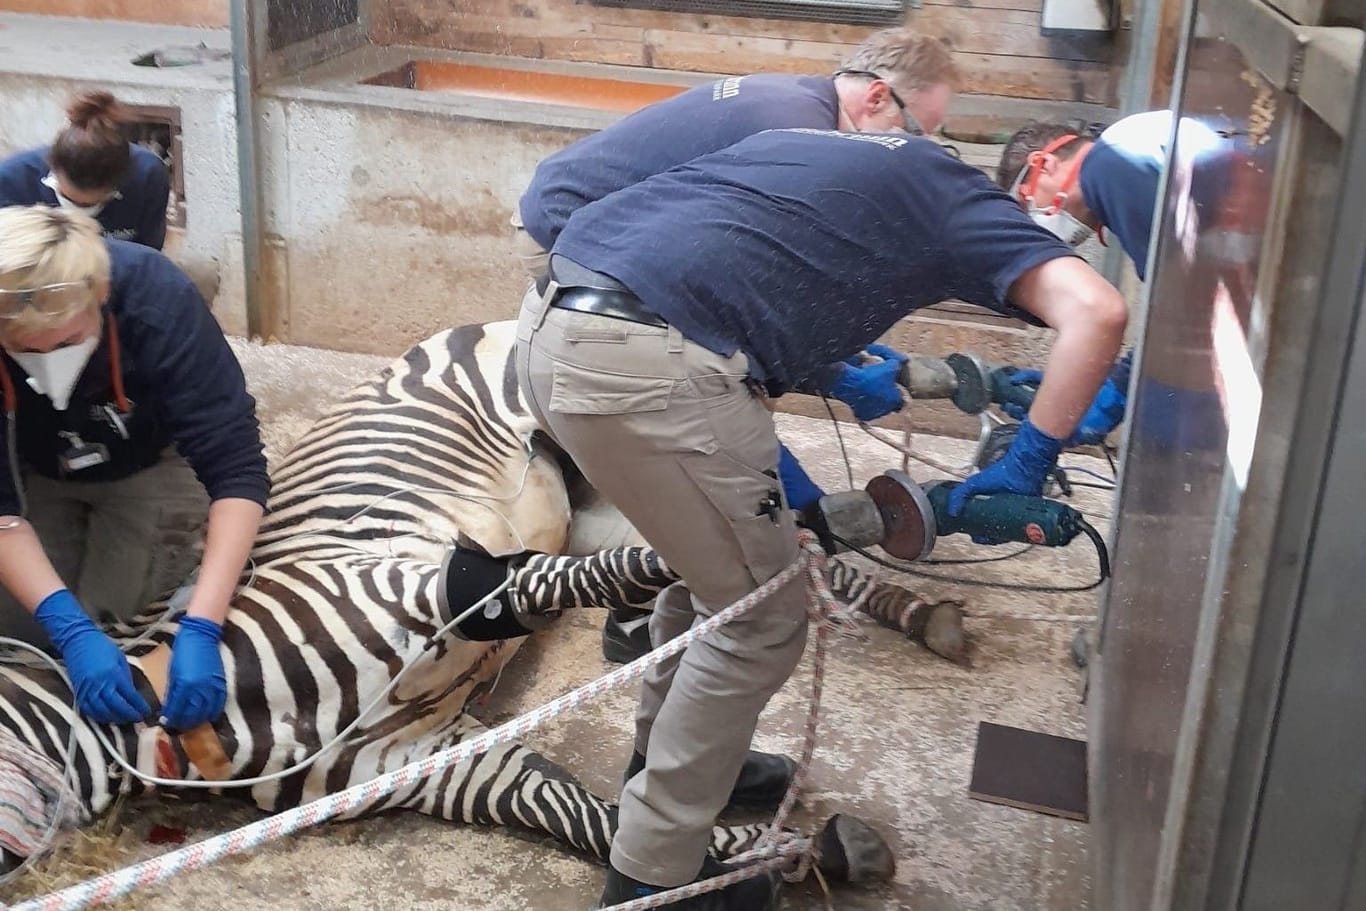 Tierpflege im Zoo: Zebras müssen zur Hufpflege in Narkose versetzt werden.